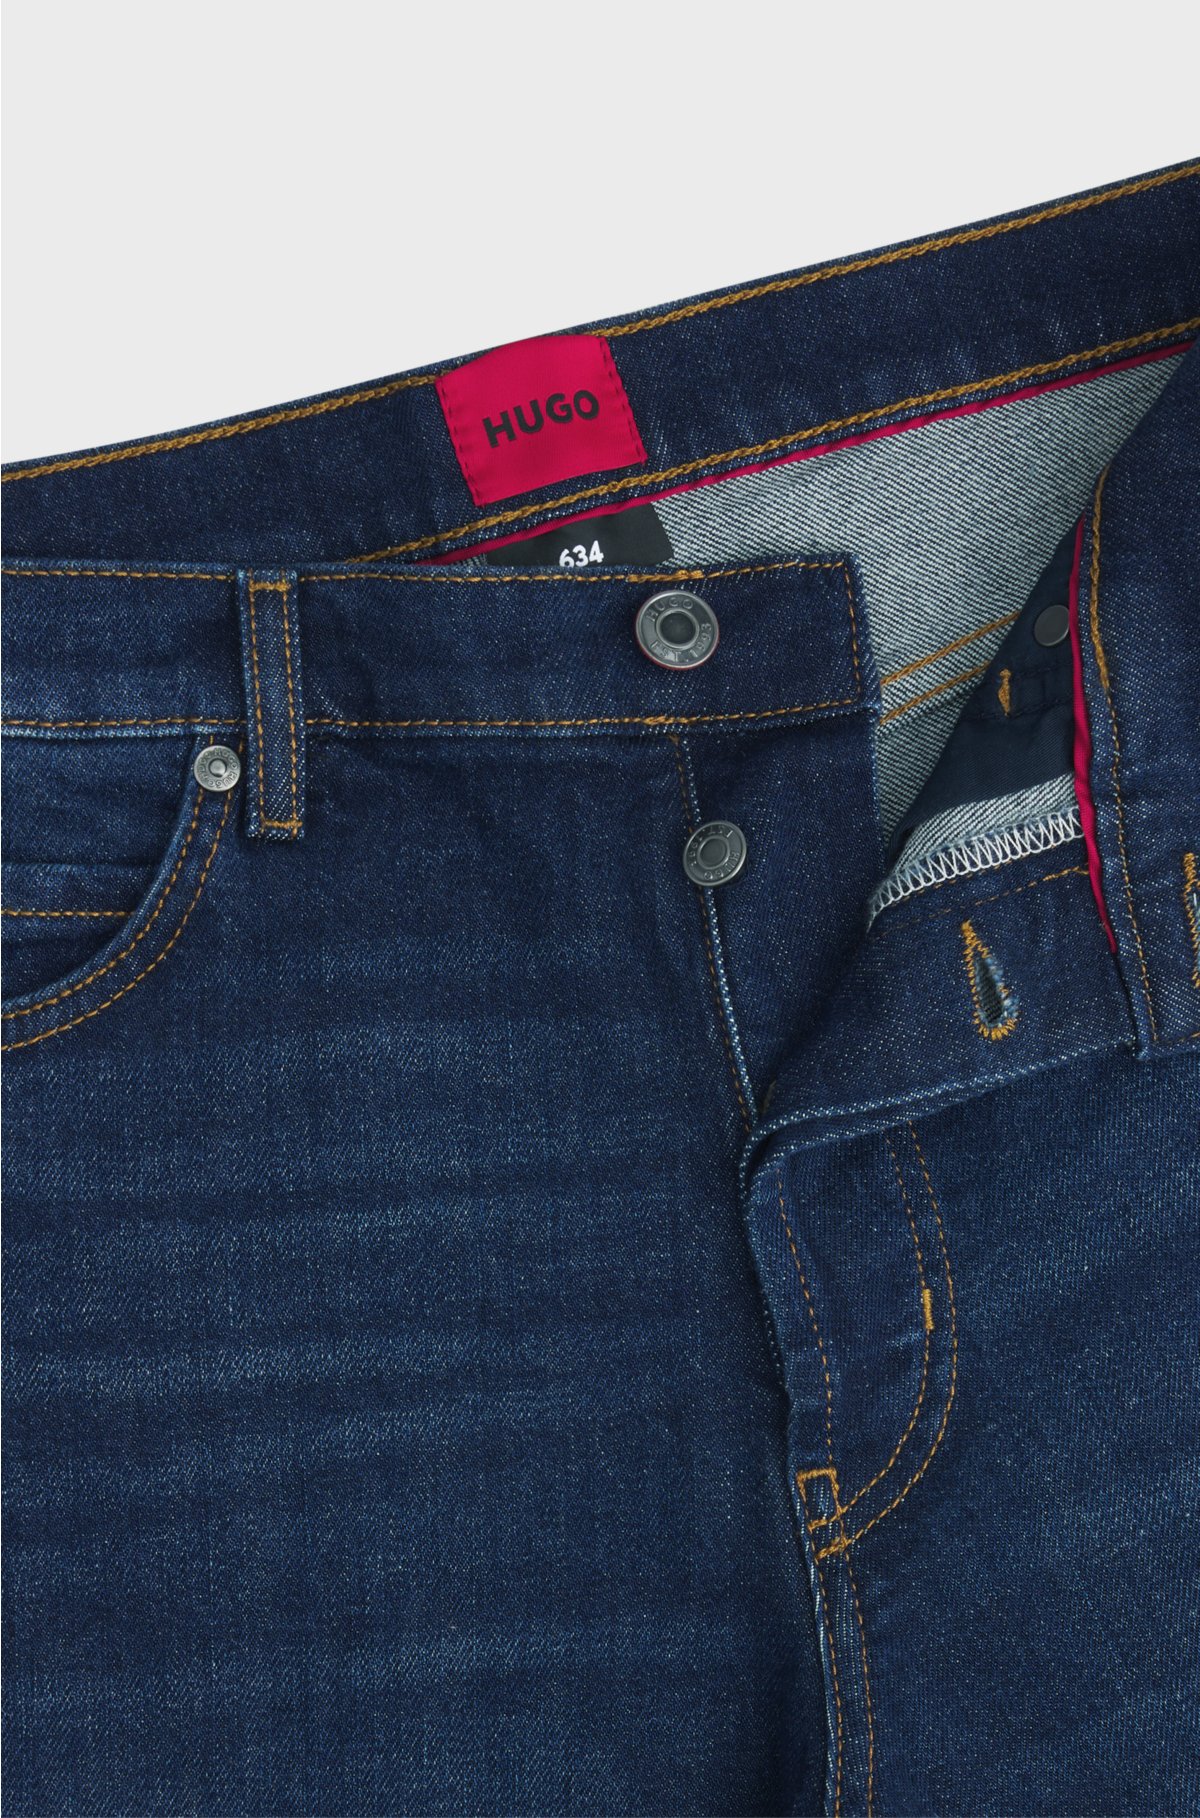 Tapered-fit jeans in blue comfort-stretch denim, Dark Blue